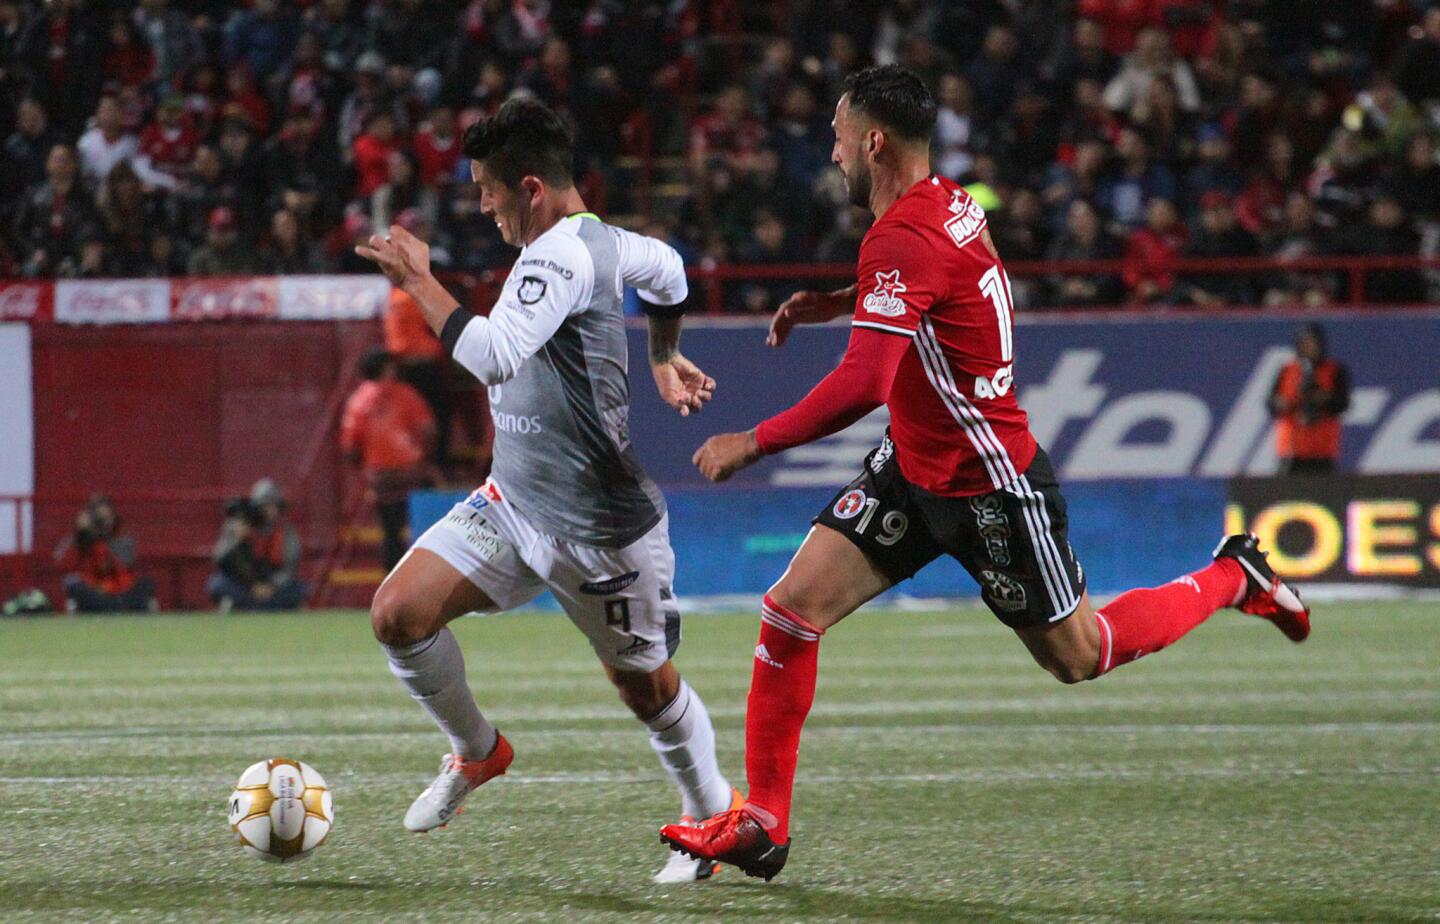 El León marcó un par de tantos en los últimos 10 minutos para avanzar a las semifinales, a pesar de perder 3-2 en el duelo ante el líder Xolos, pero imponerse 5-3 en el global.